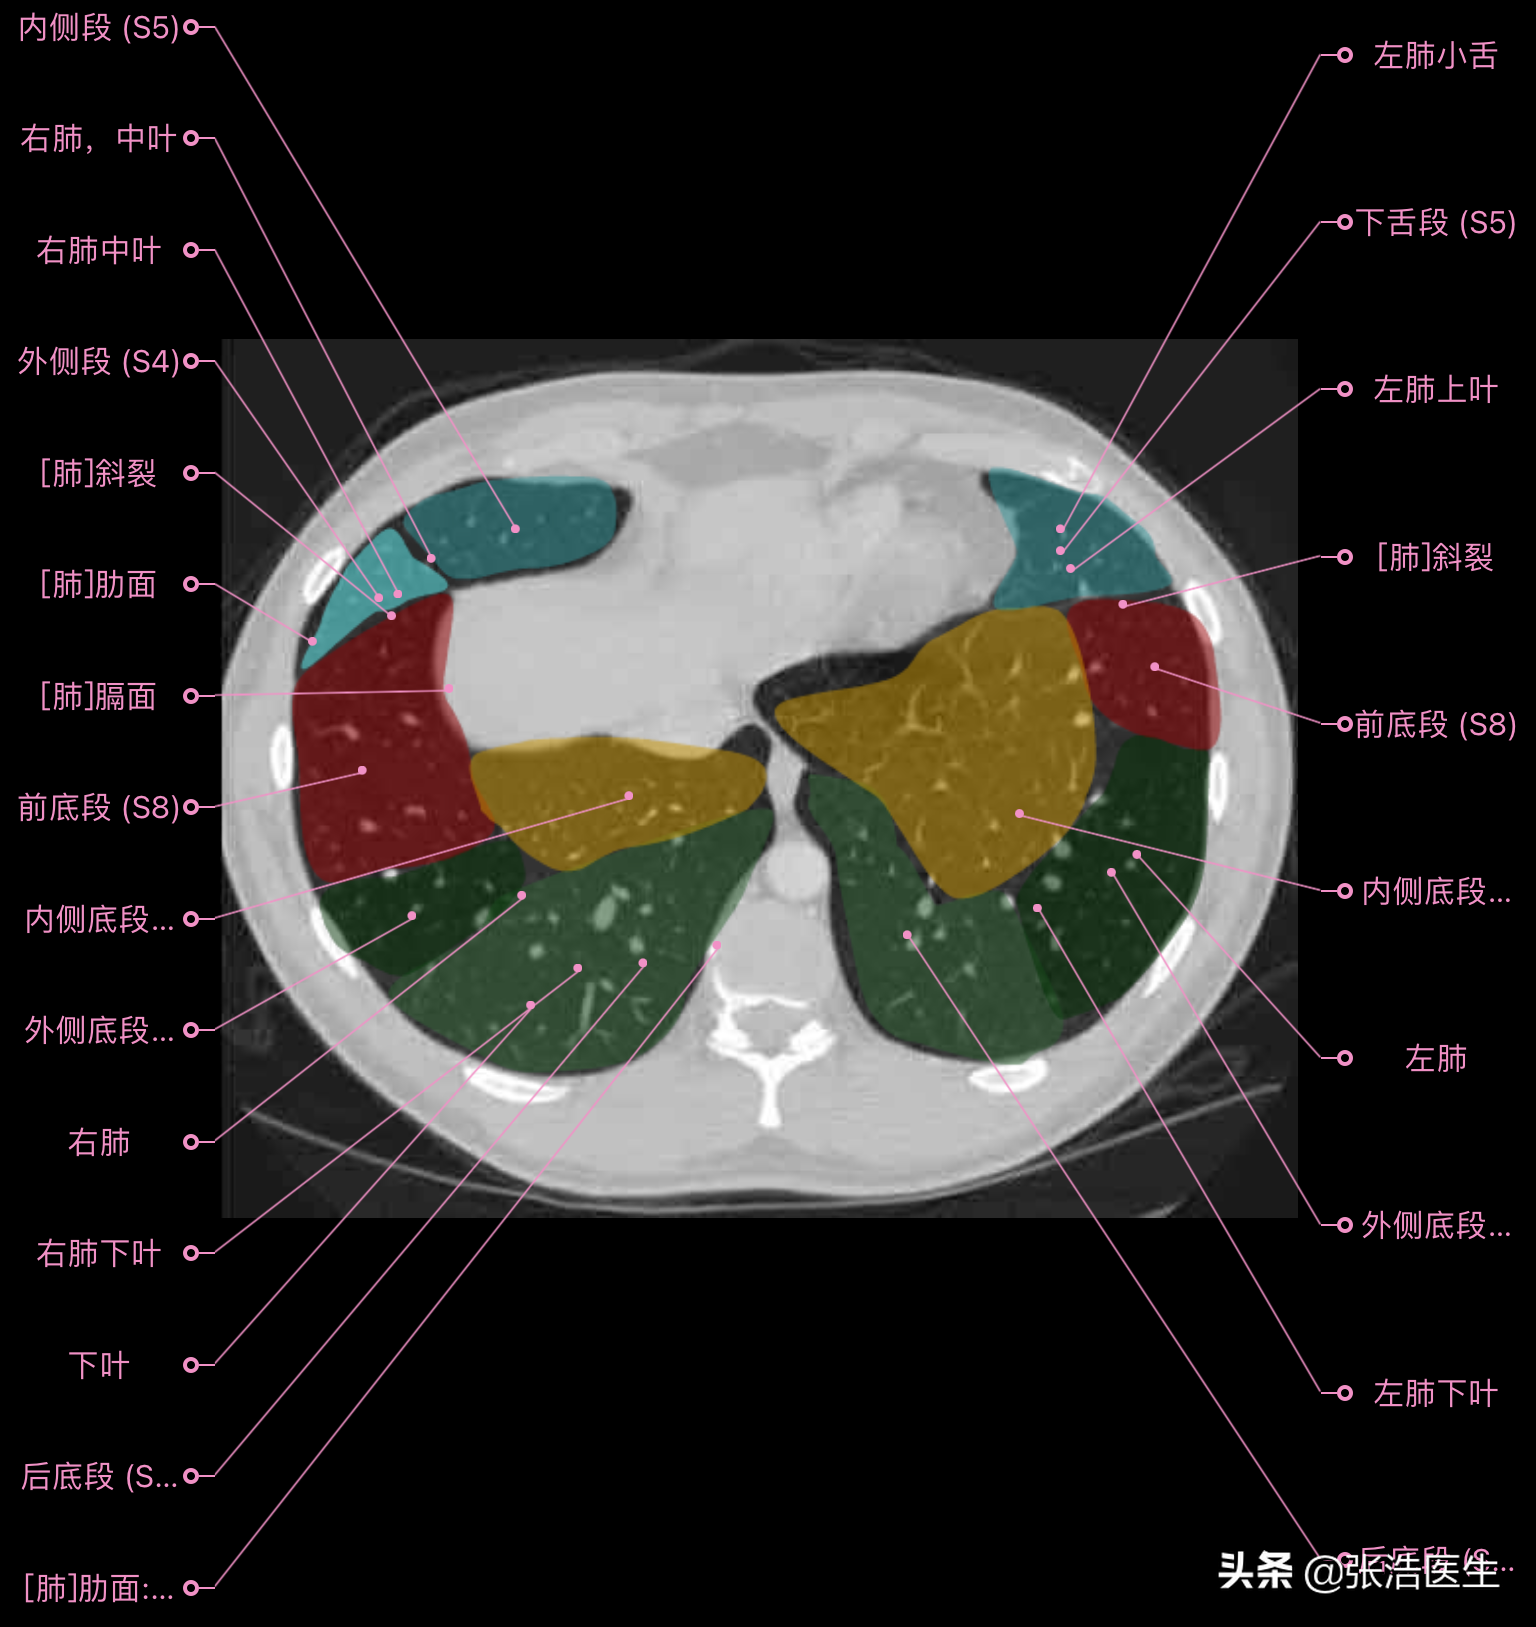 肺部ct高清解剖图谱,附带详细标注